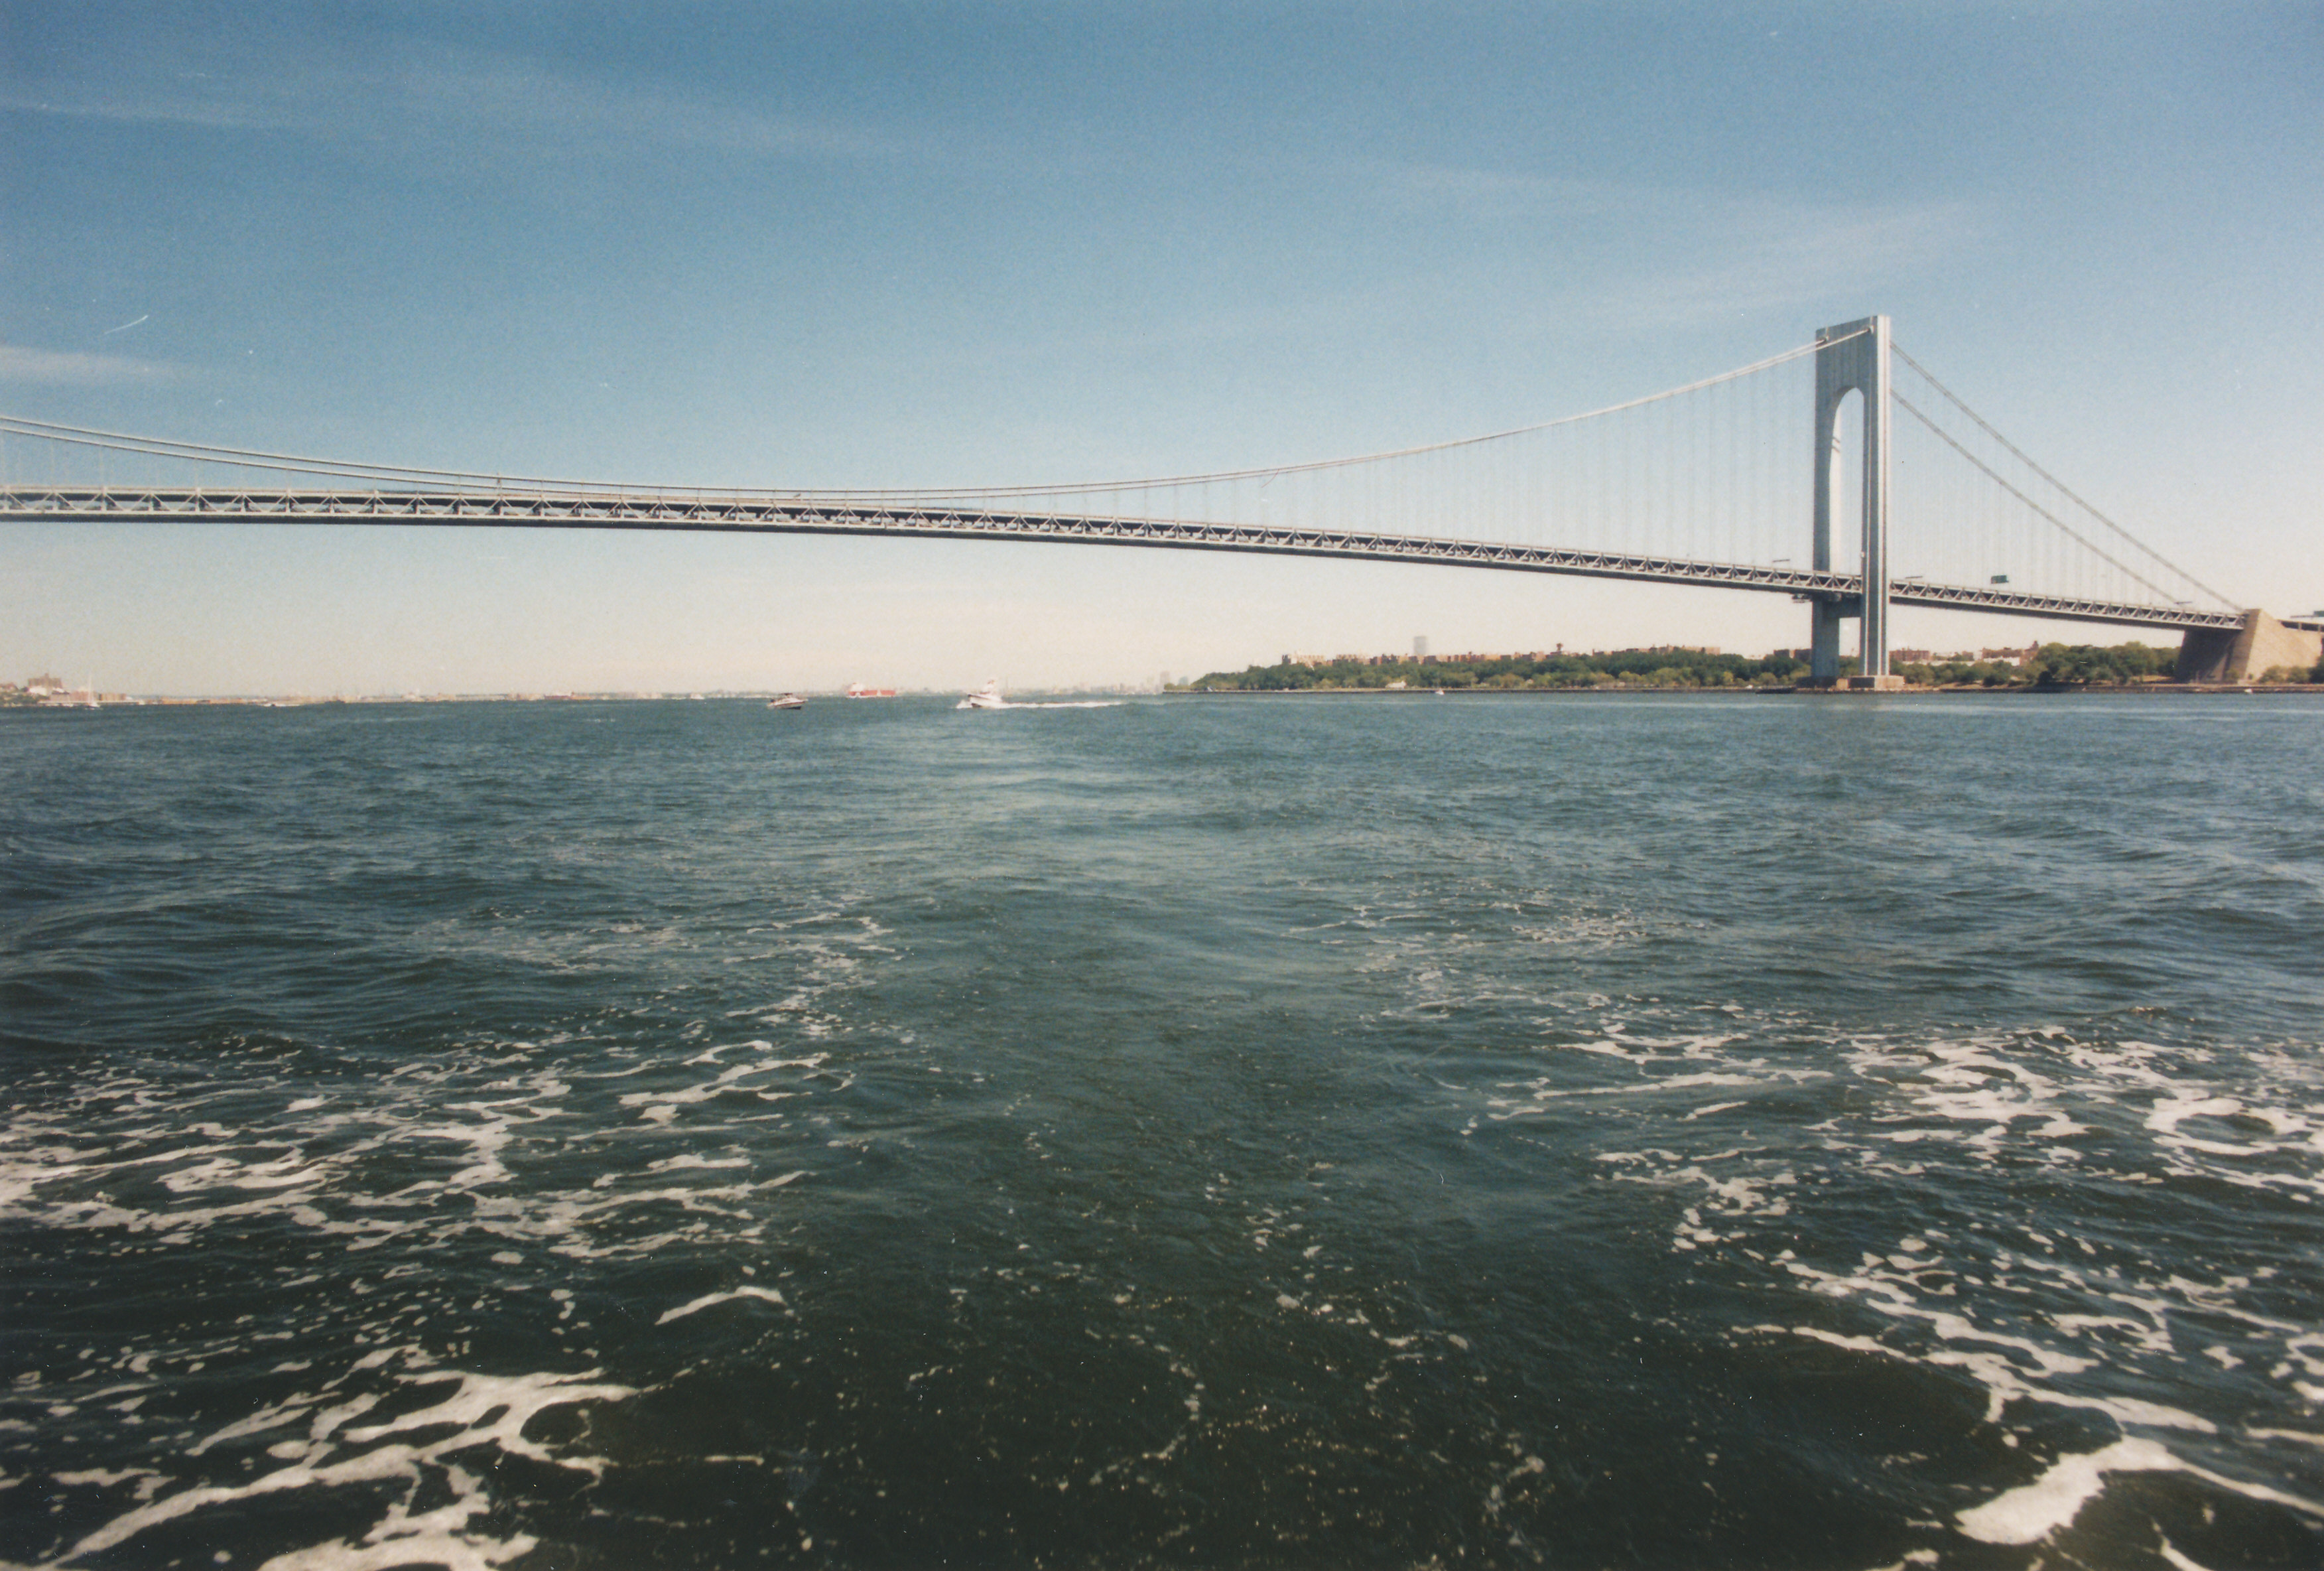 New York Harbor to Chesapeake Bay